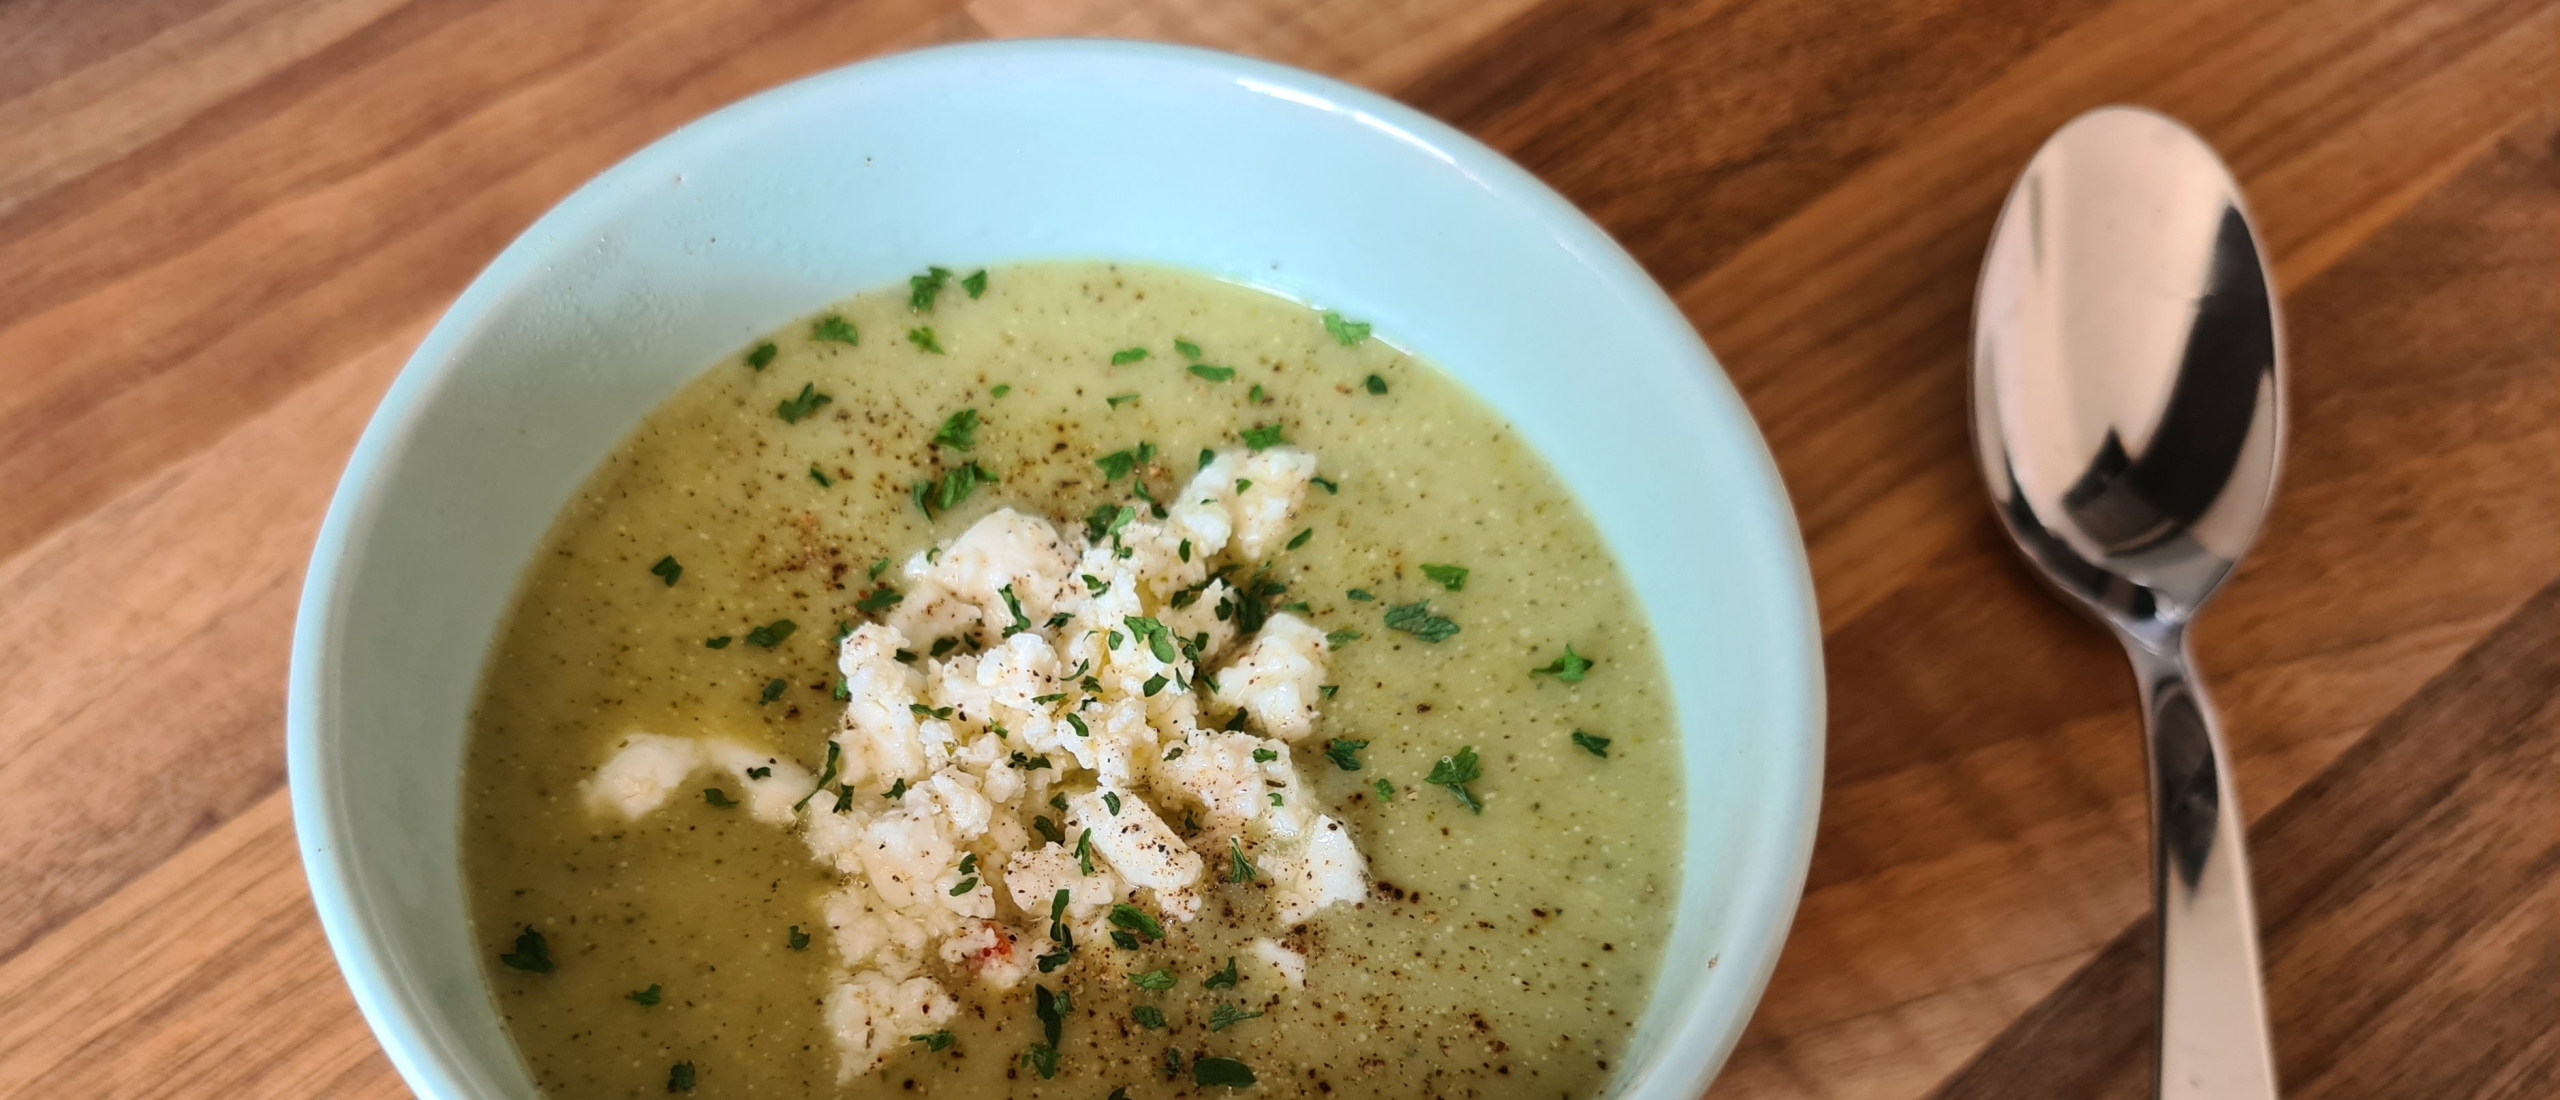 Romige courgette broccoli soep eiwitrijk calorierijk aankomen recept recepten om aan te komen